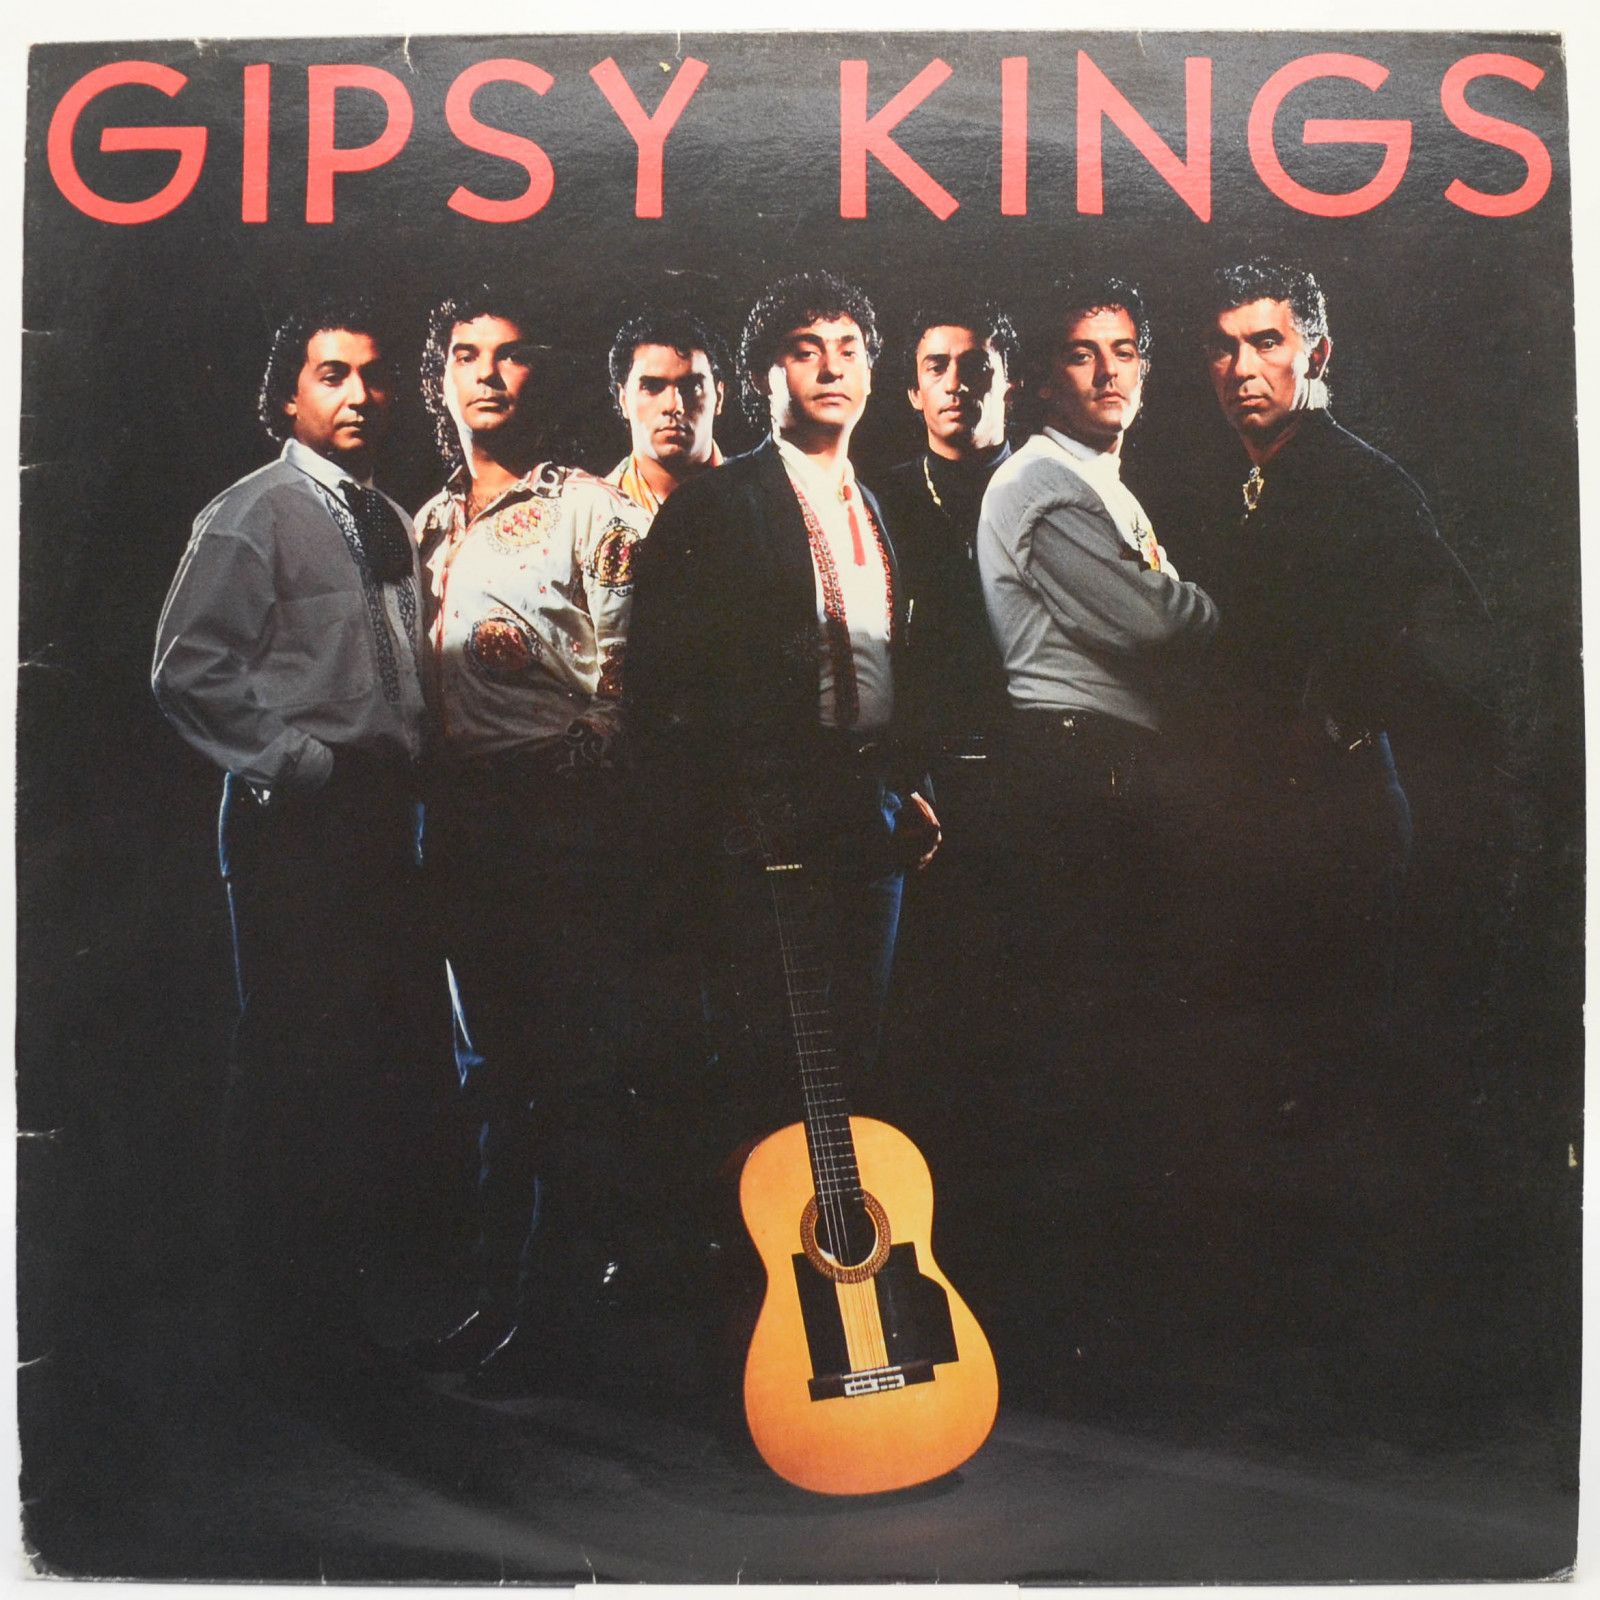 Gipsy Kings — Gipsy Kings (1-st, France), 1987